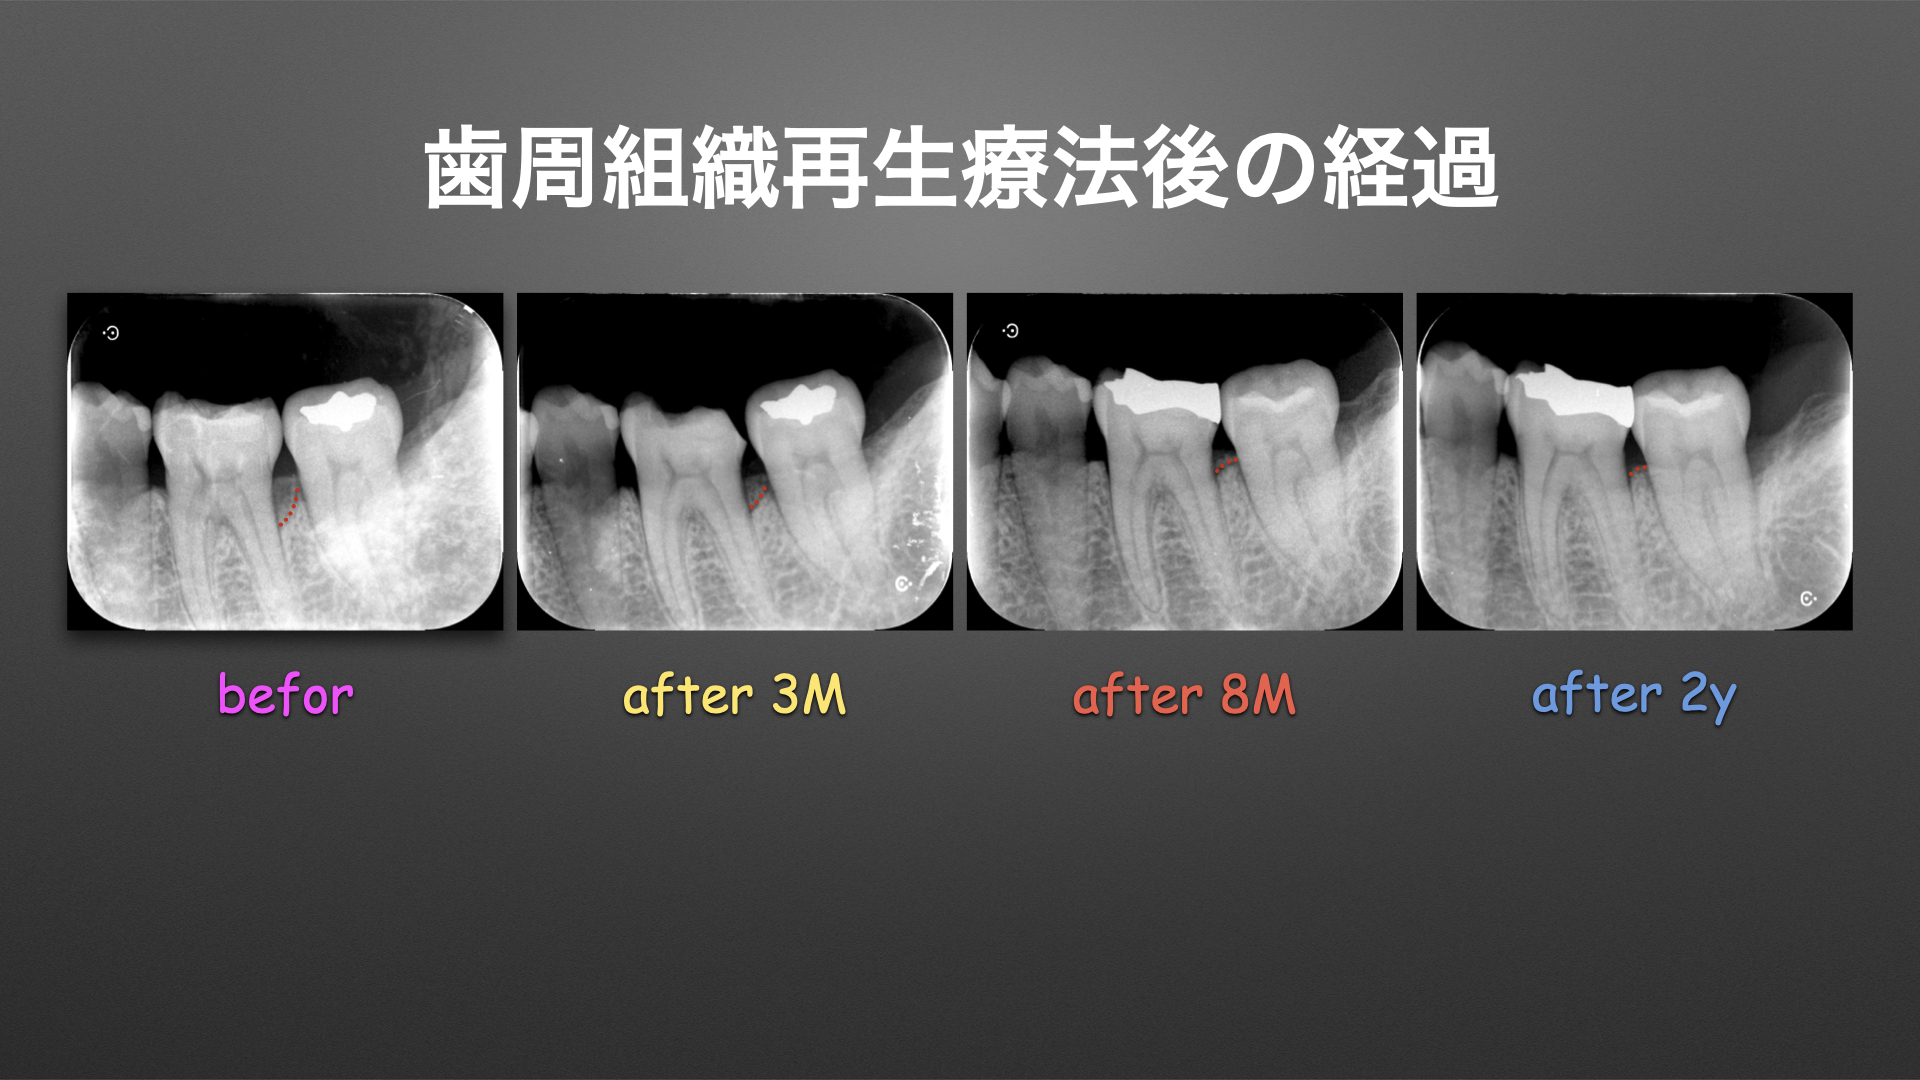 歯周組織再生療法の術後経過